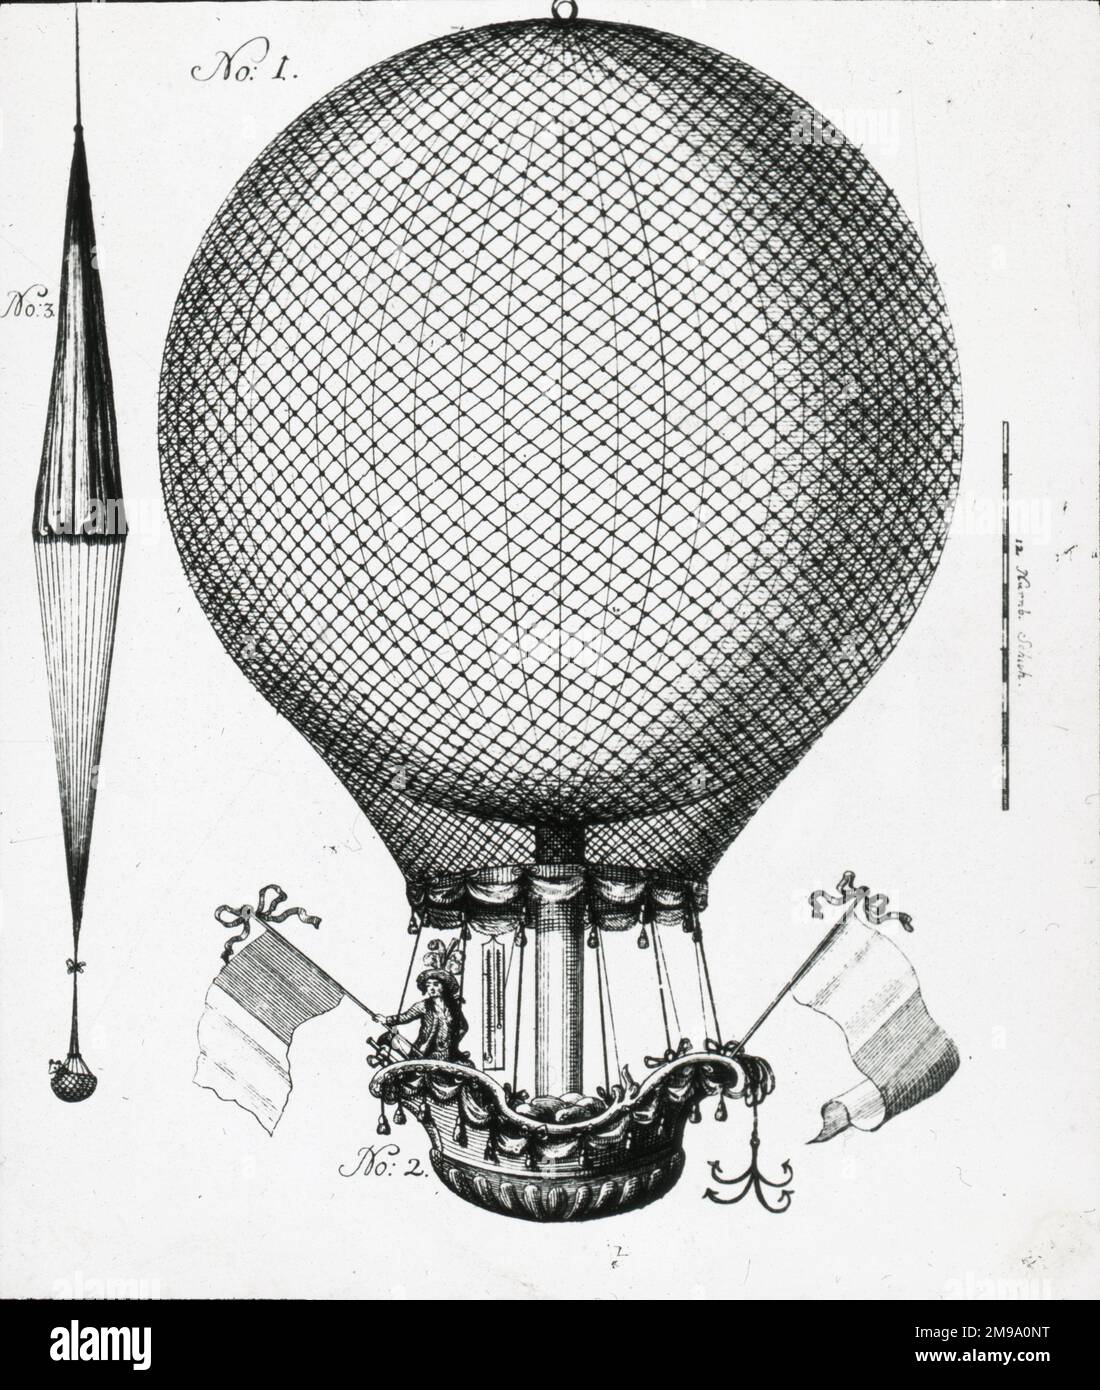 El paracaídas experimental de Blanchards utilizado en Nurnberg, 1787 Foto de stock